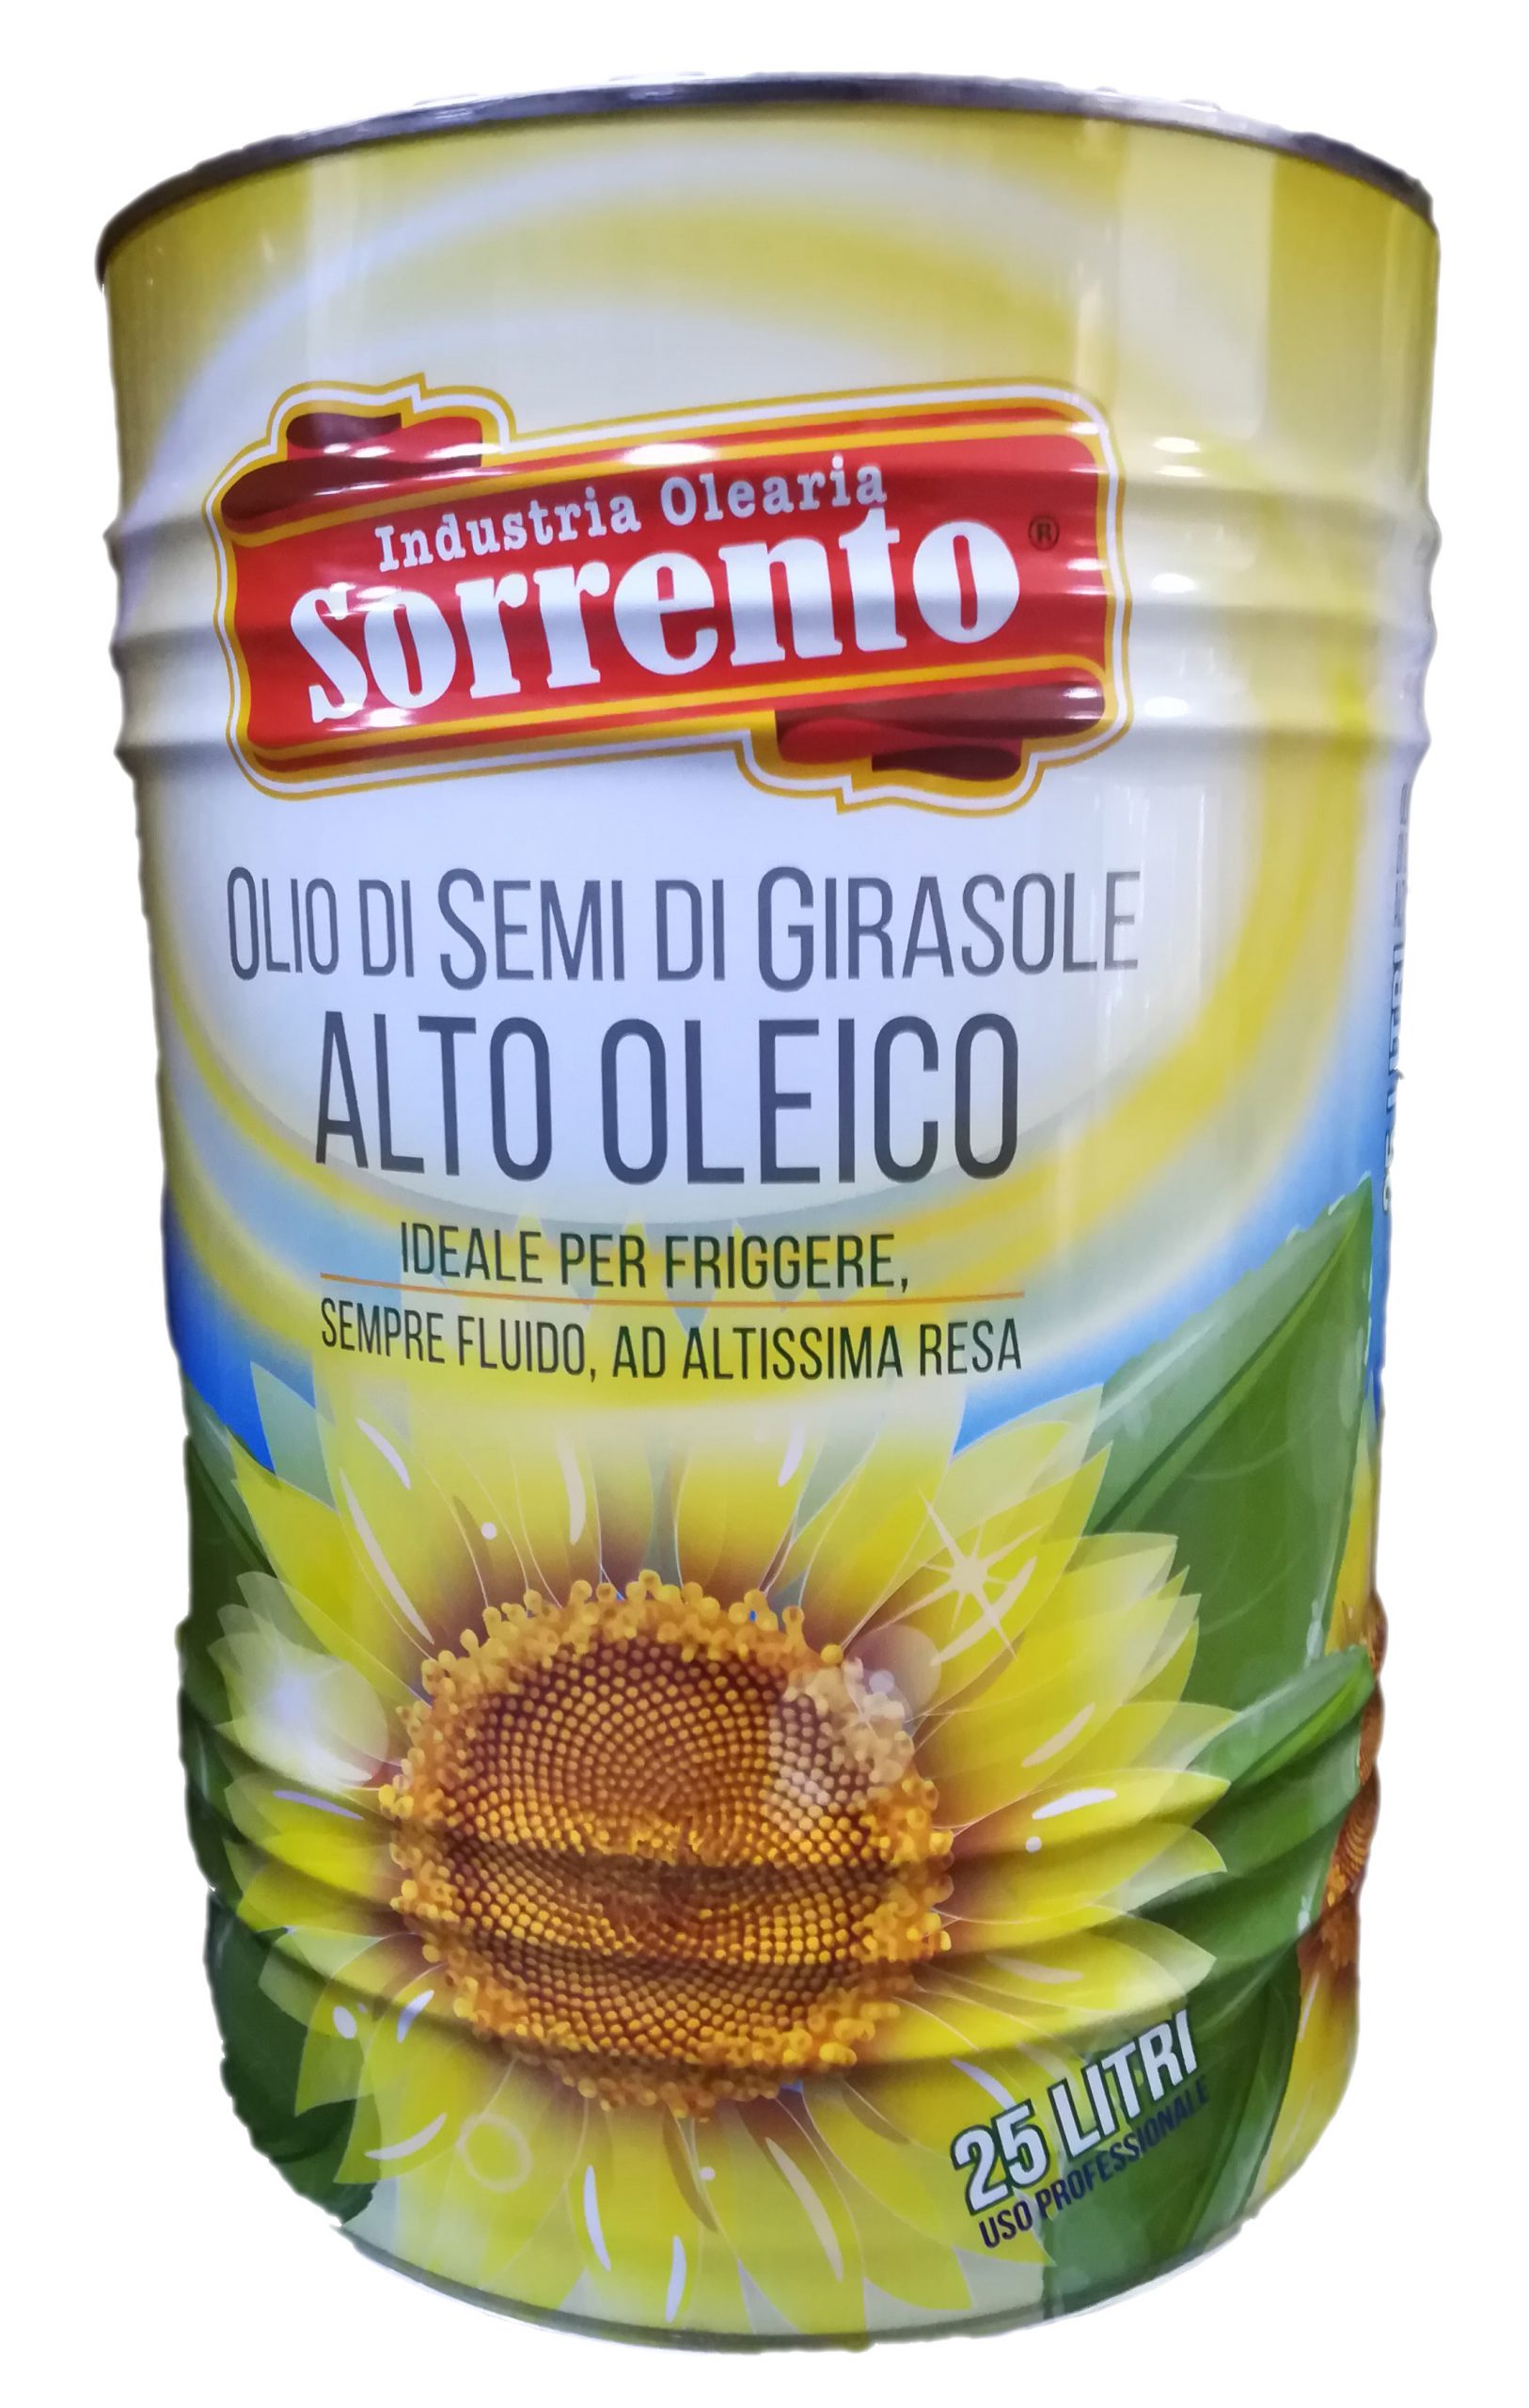 SORRENTO-Prodotti-2-LUNGA CONSERVAZIONE-Olio e Aceto-OLIO ALTO OLEICO LT 25 SORRENTO-0